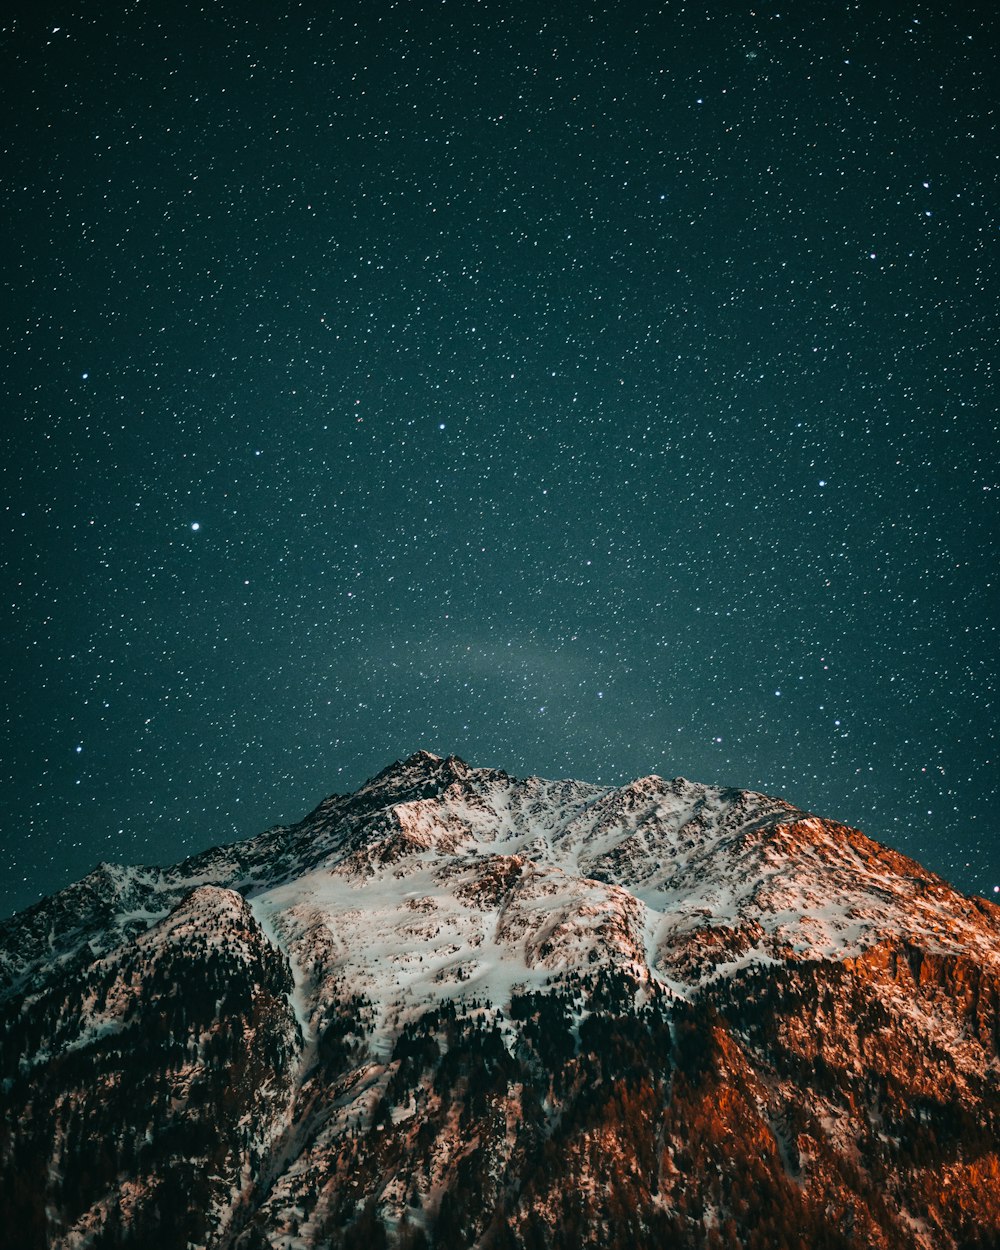 montagna innevata sotto la notte stellata